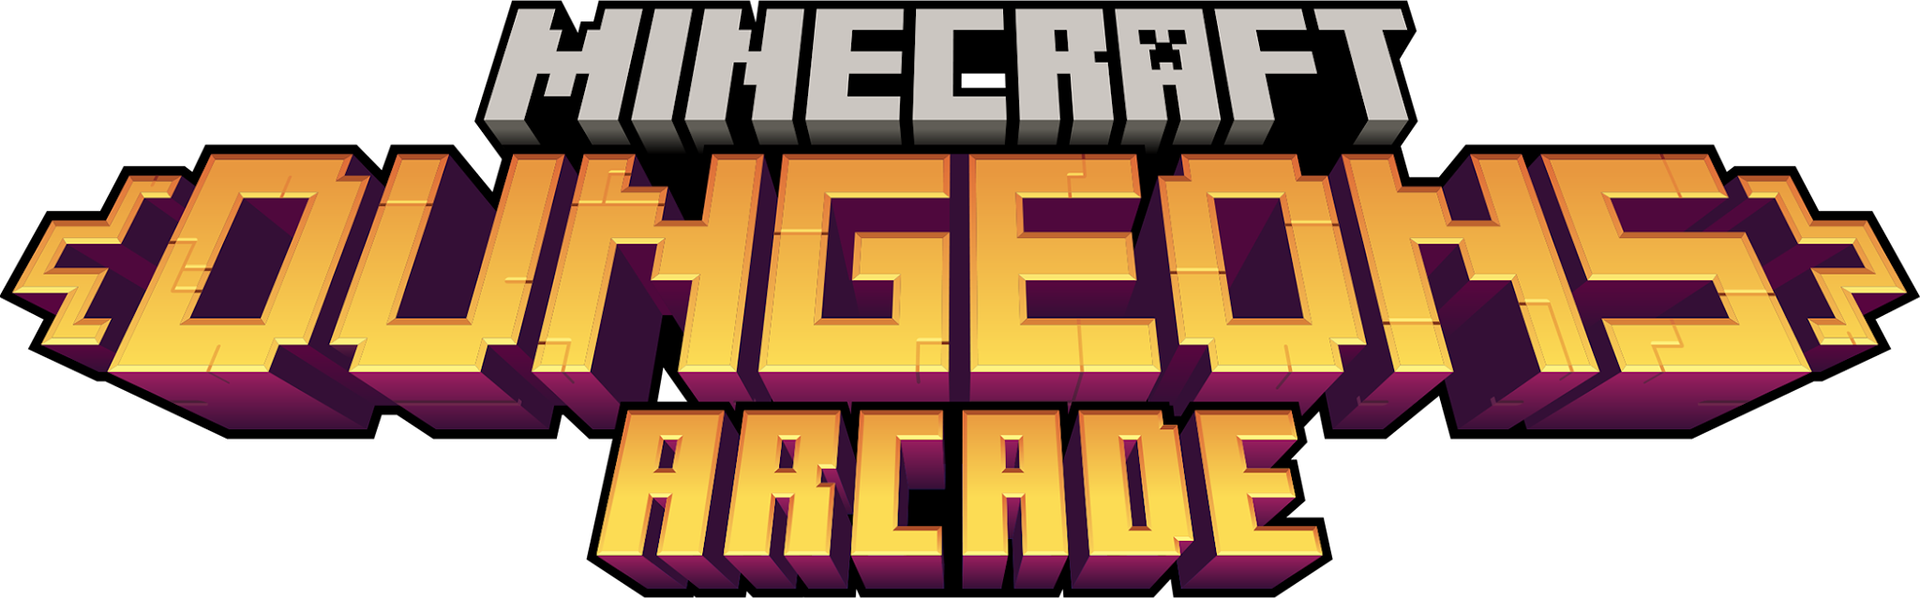 Minecraft Dungeons Arcade